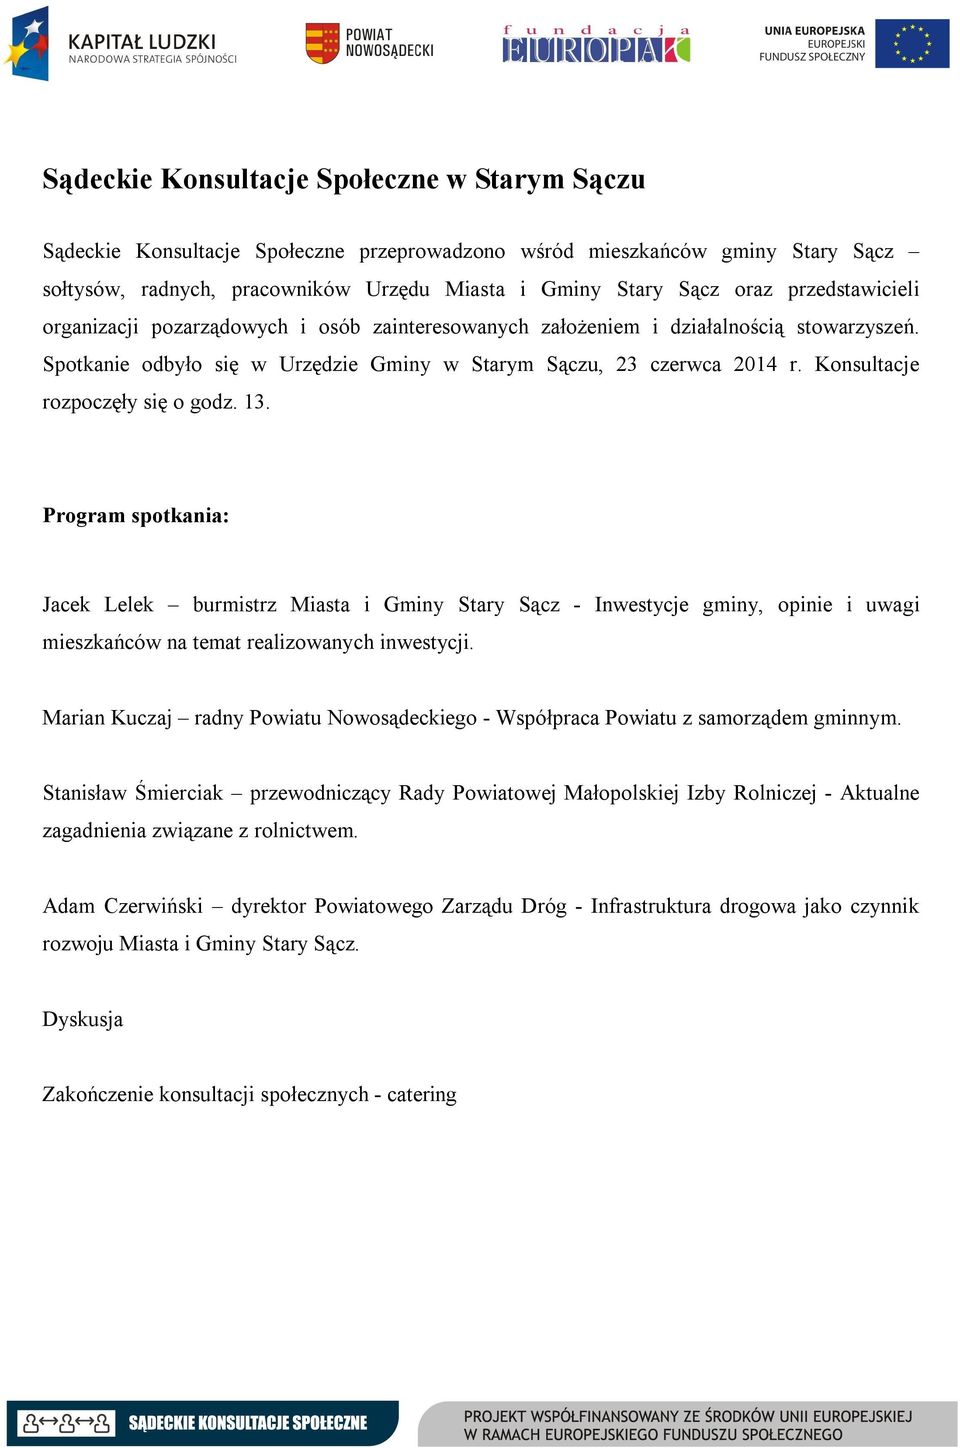 Konsultacje rozpoczęły się o godz. 13. Program spotkania: Jacek Lelek burmistrz Miasta i Gminy Stary Sącz - Inwestycje gminy, opinie i uwagi mieszkańców na temat realizowanych inwestycji.